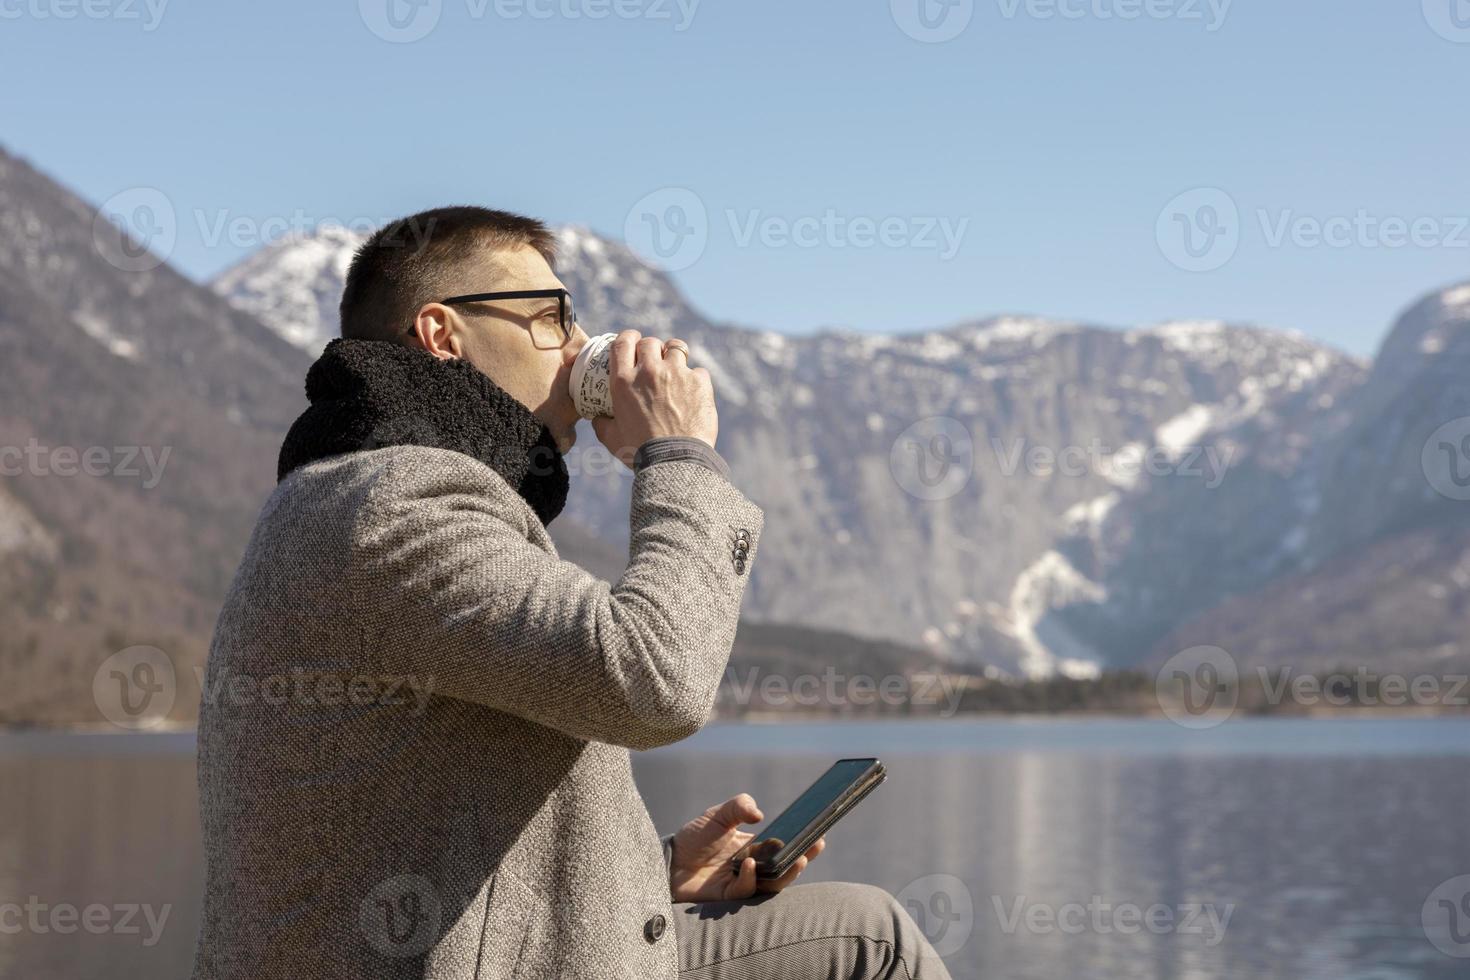 jovem adulto sentado ao ar livre, tomando café e apreciando montanhas, lago, bom tempo, céu azul e sol. paisagem bonita. tempo consigo mesmo, sonho, relaxamento, saúde mental. feriado. foto